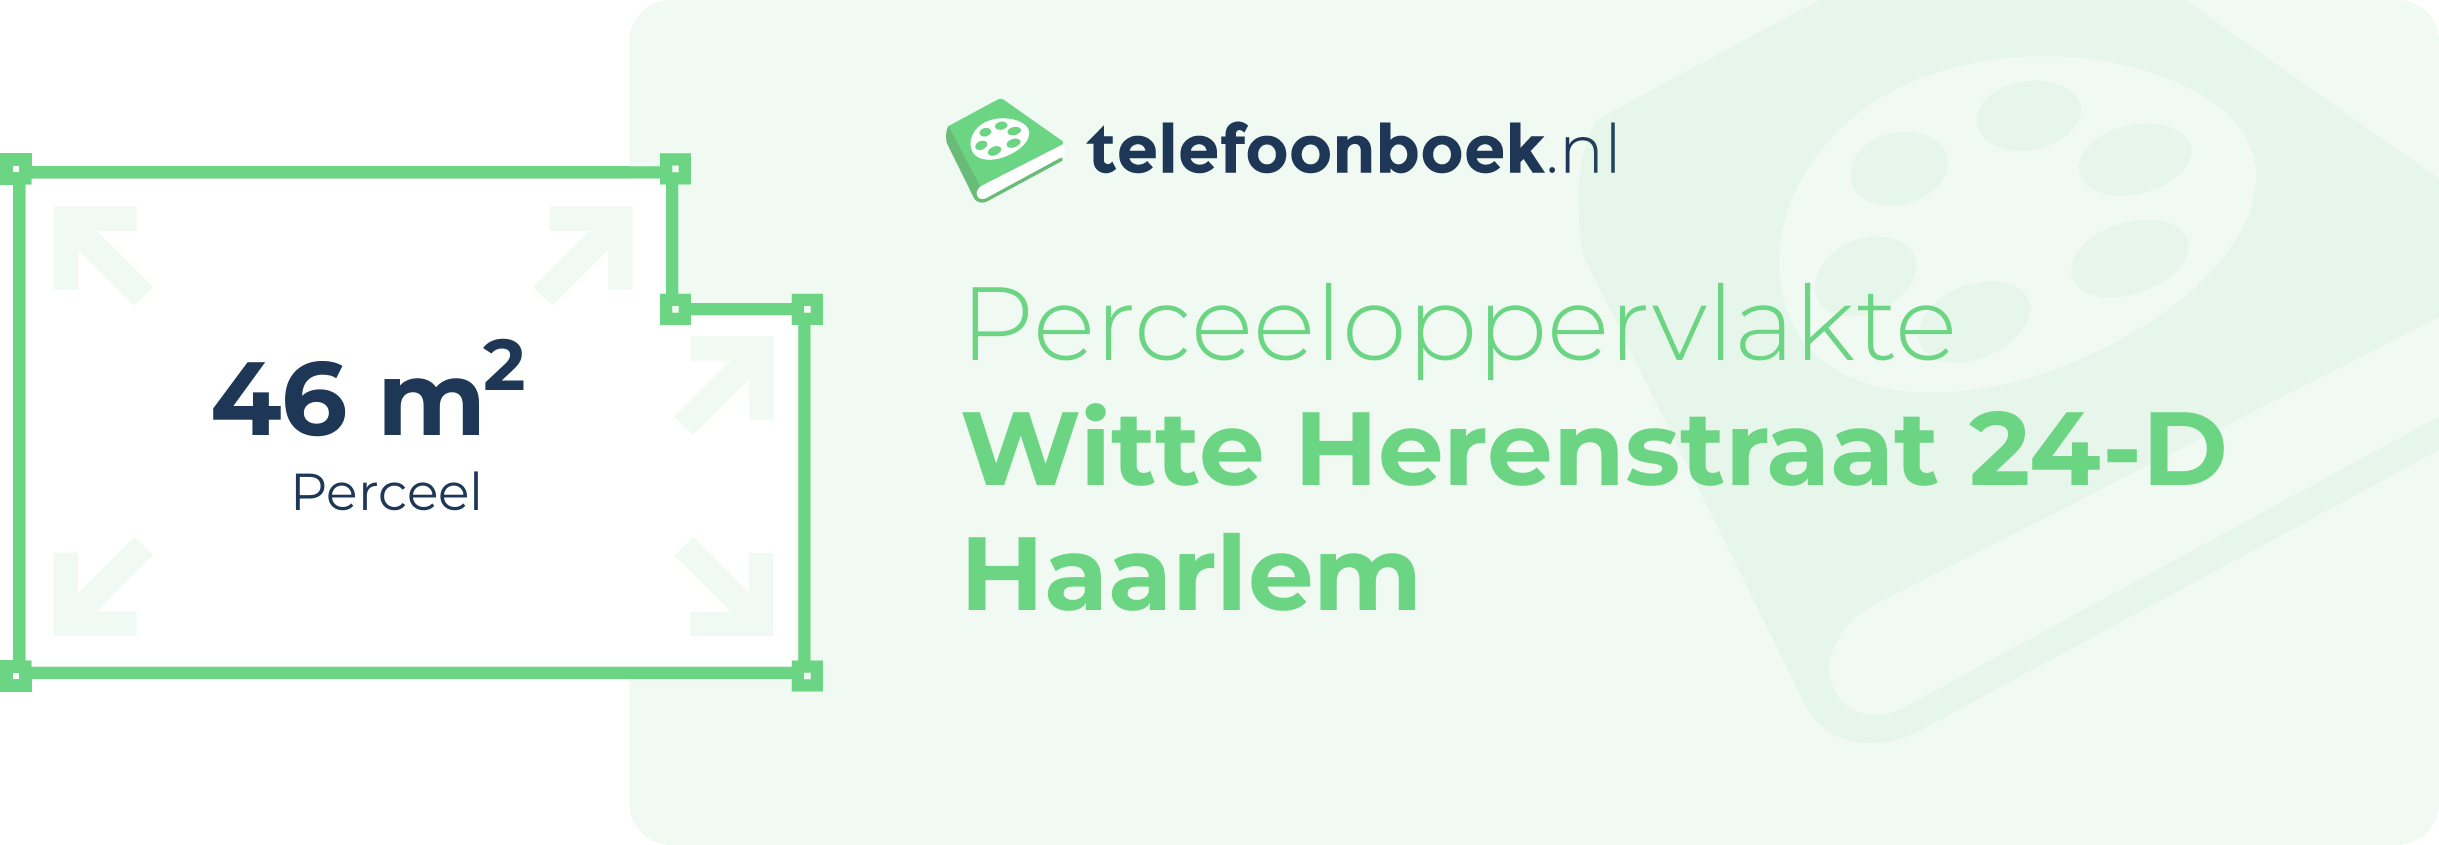 Perceeloppervlakte Witte Herenstraat 24-D Haarlem